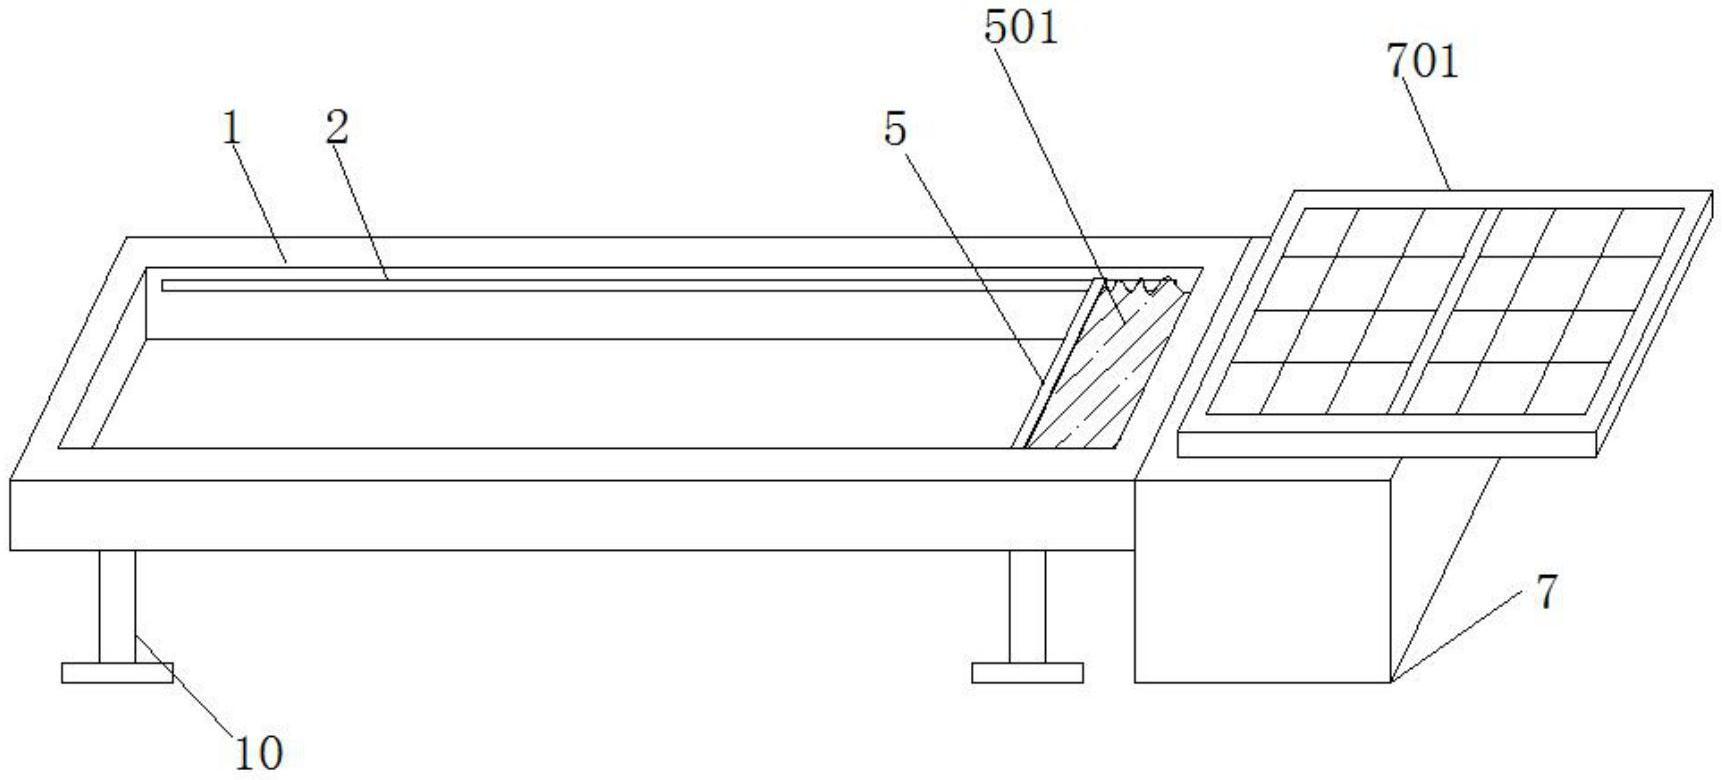 一种智能建筑用的自动遮阳装置专利图